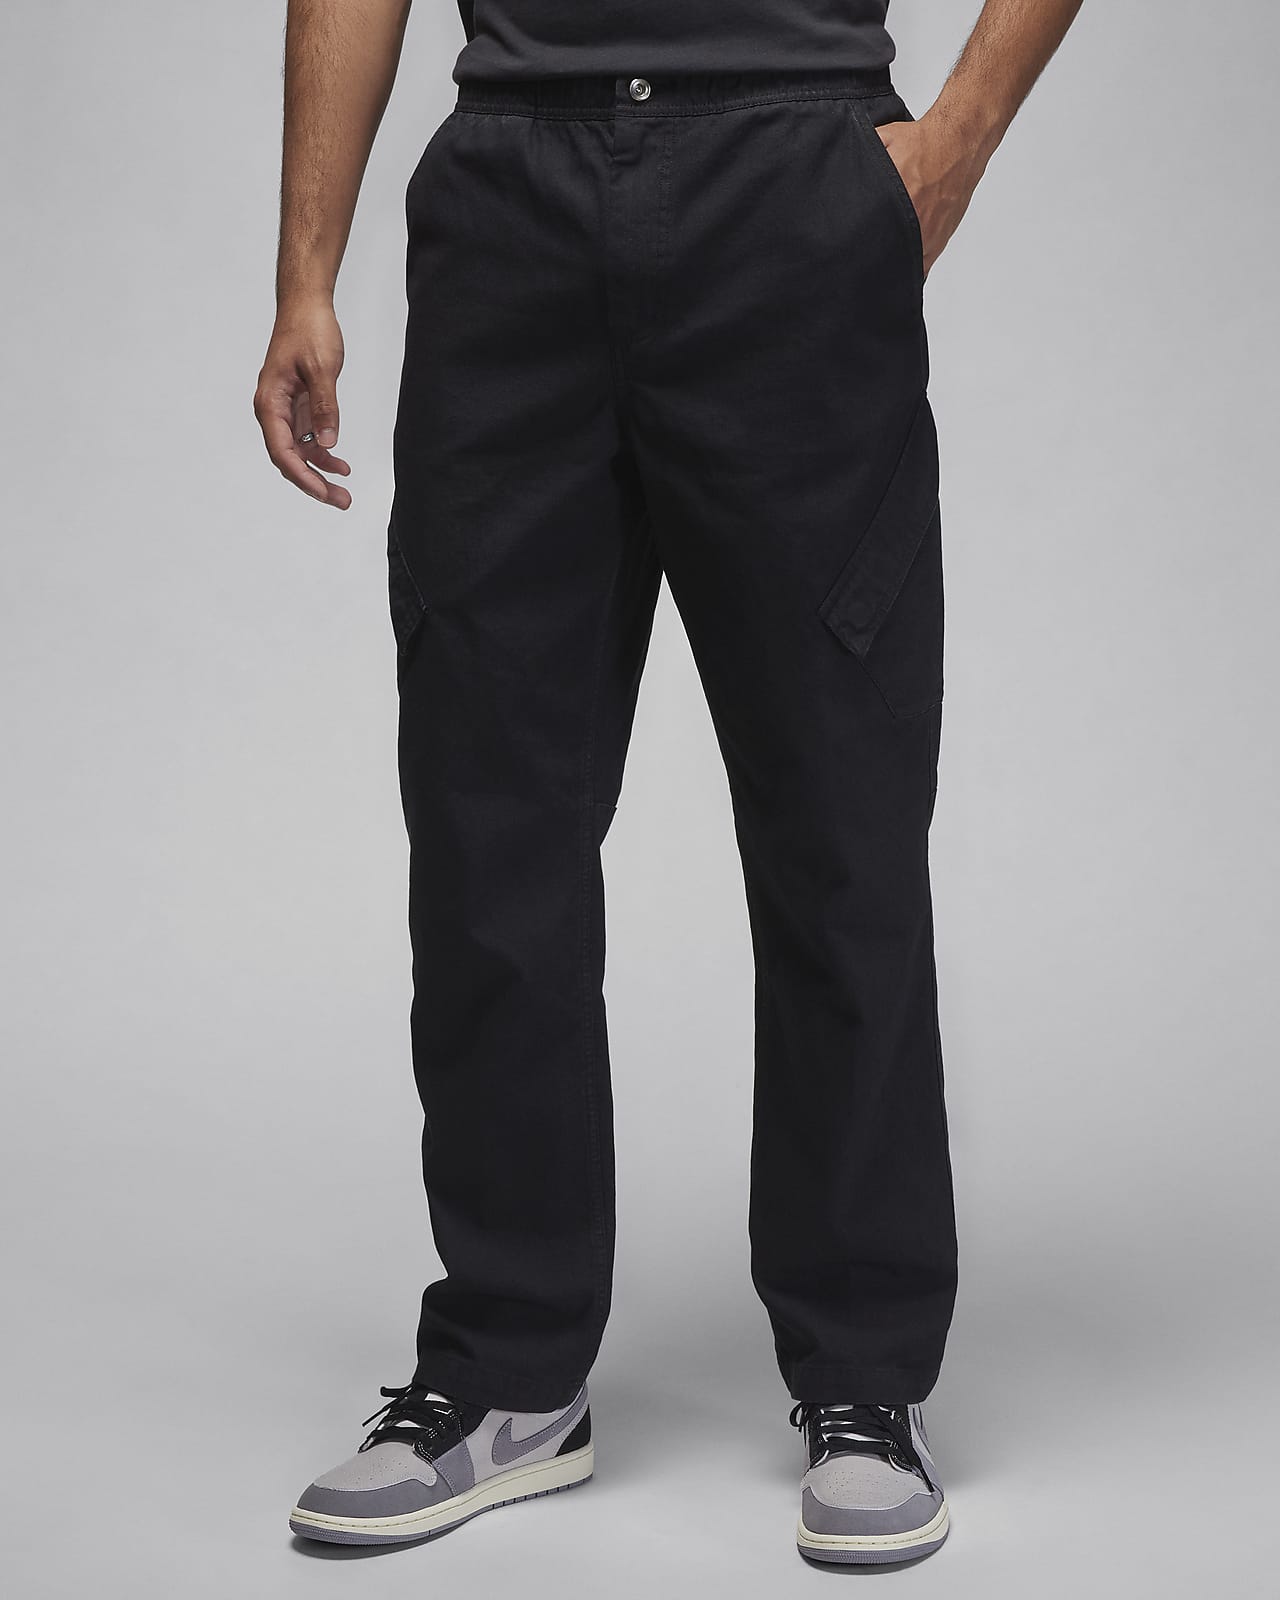 Jordan Essentials Chicago Pantalons amb efecte rentat - Home